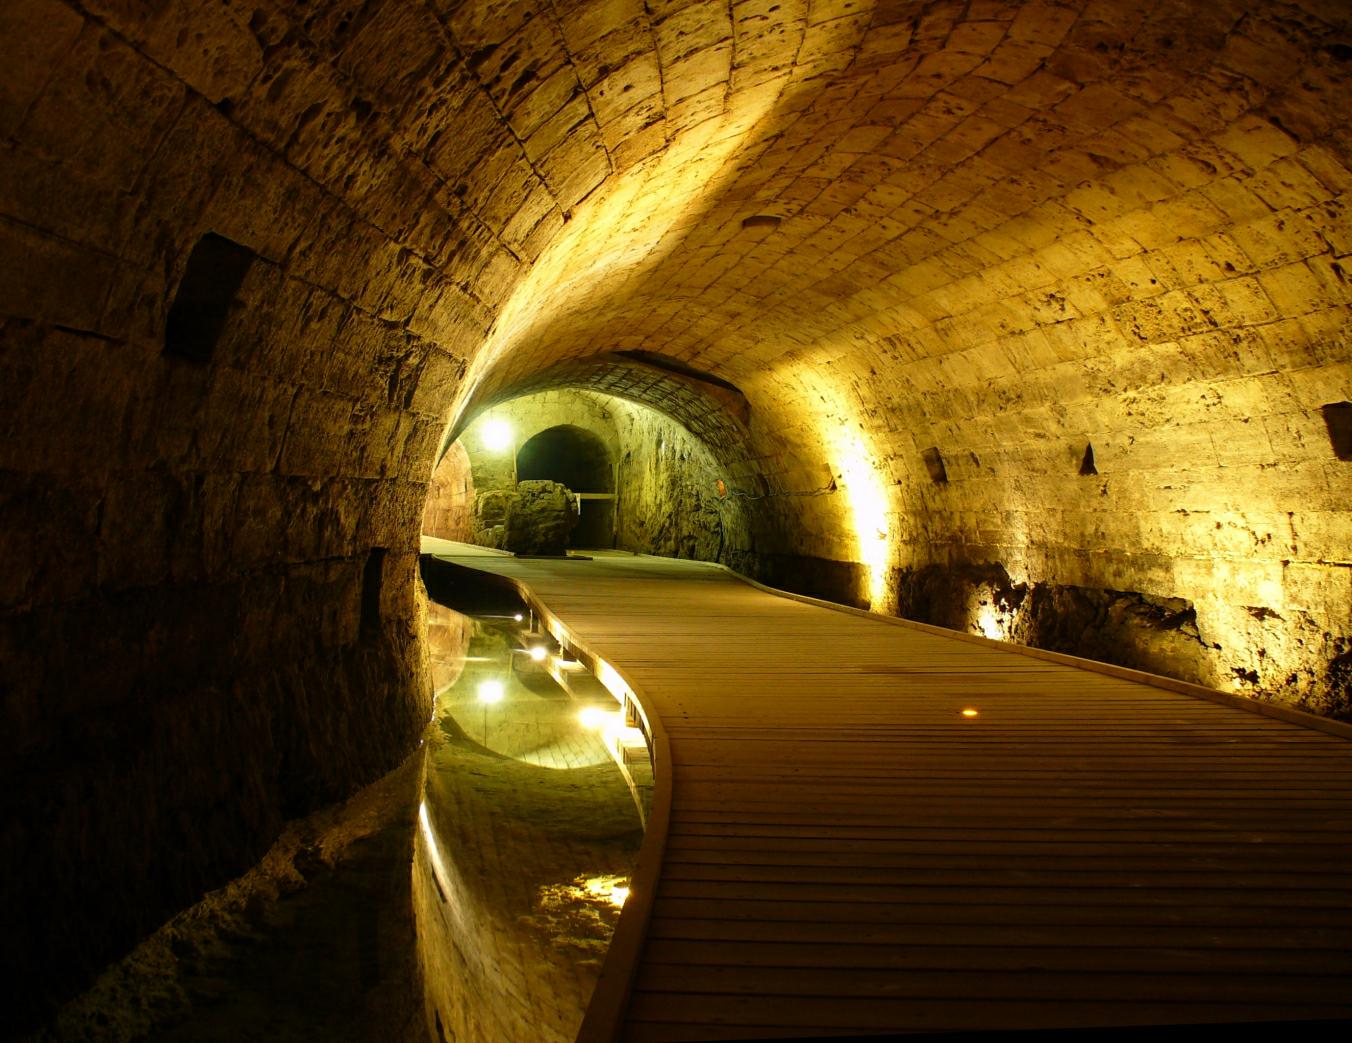 یک تونل باستانی ساخته شده توسط شوالیه های معبد که به مدت 700 سال گم شده بود، به طور غیرمنتظره ای کشف شد 2